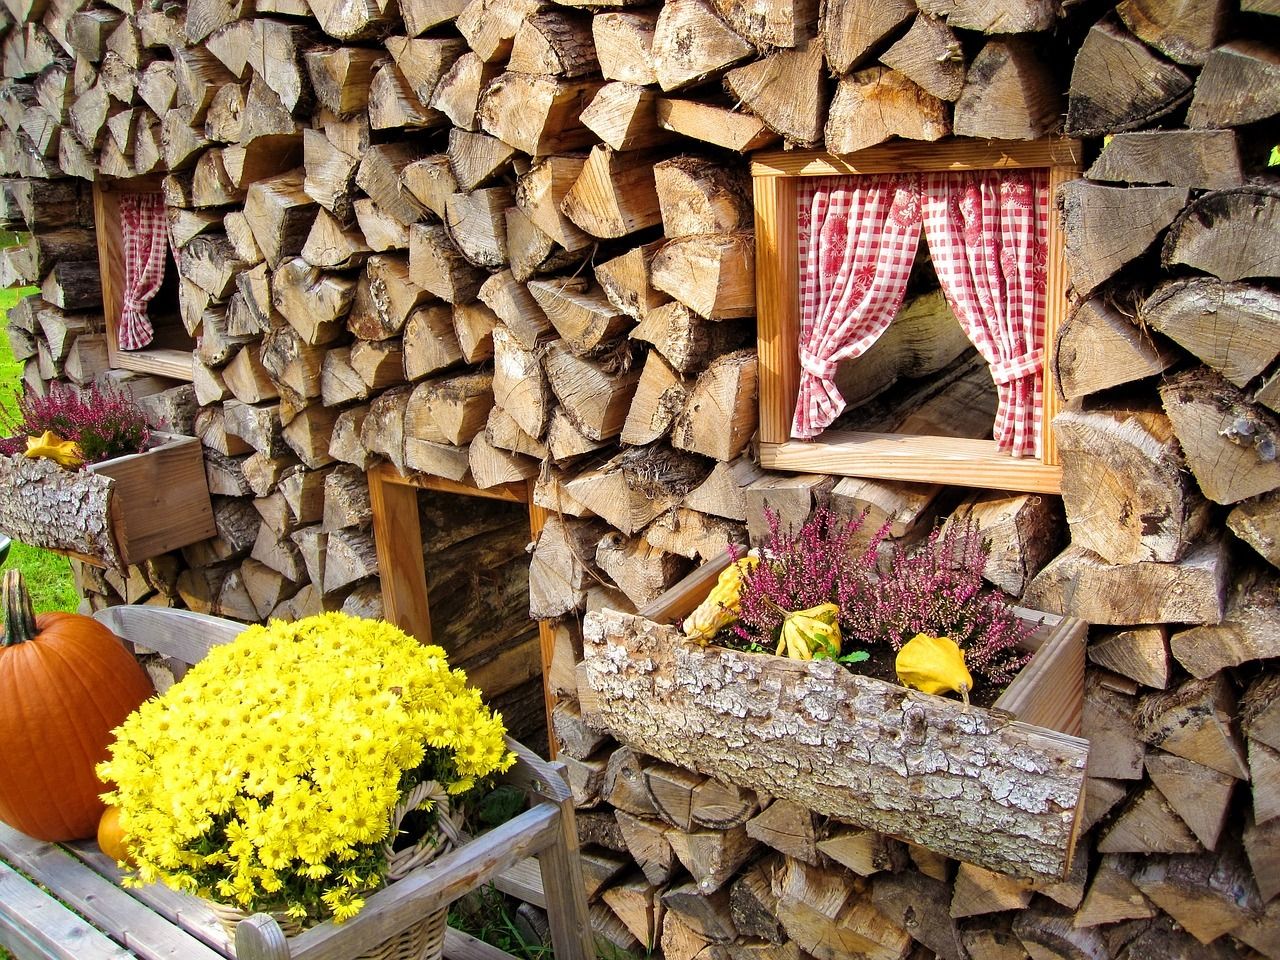 Как сложить дрова: 10 удобных идей и 30 фото красивых поленниц